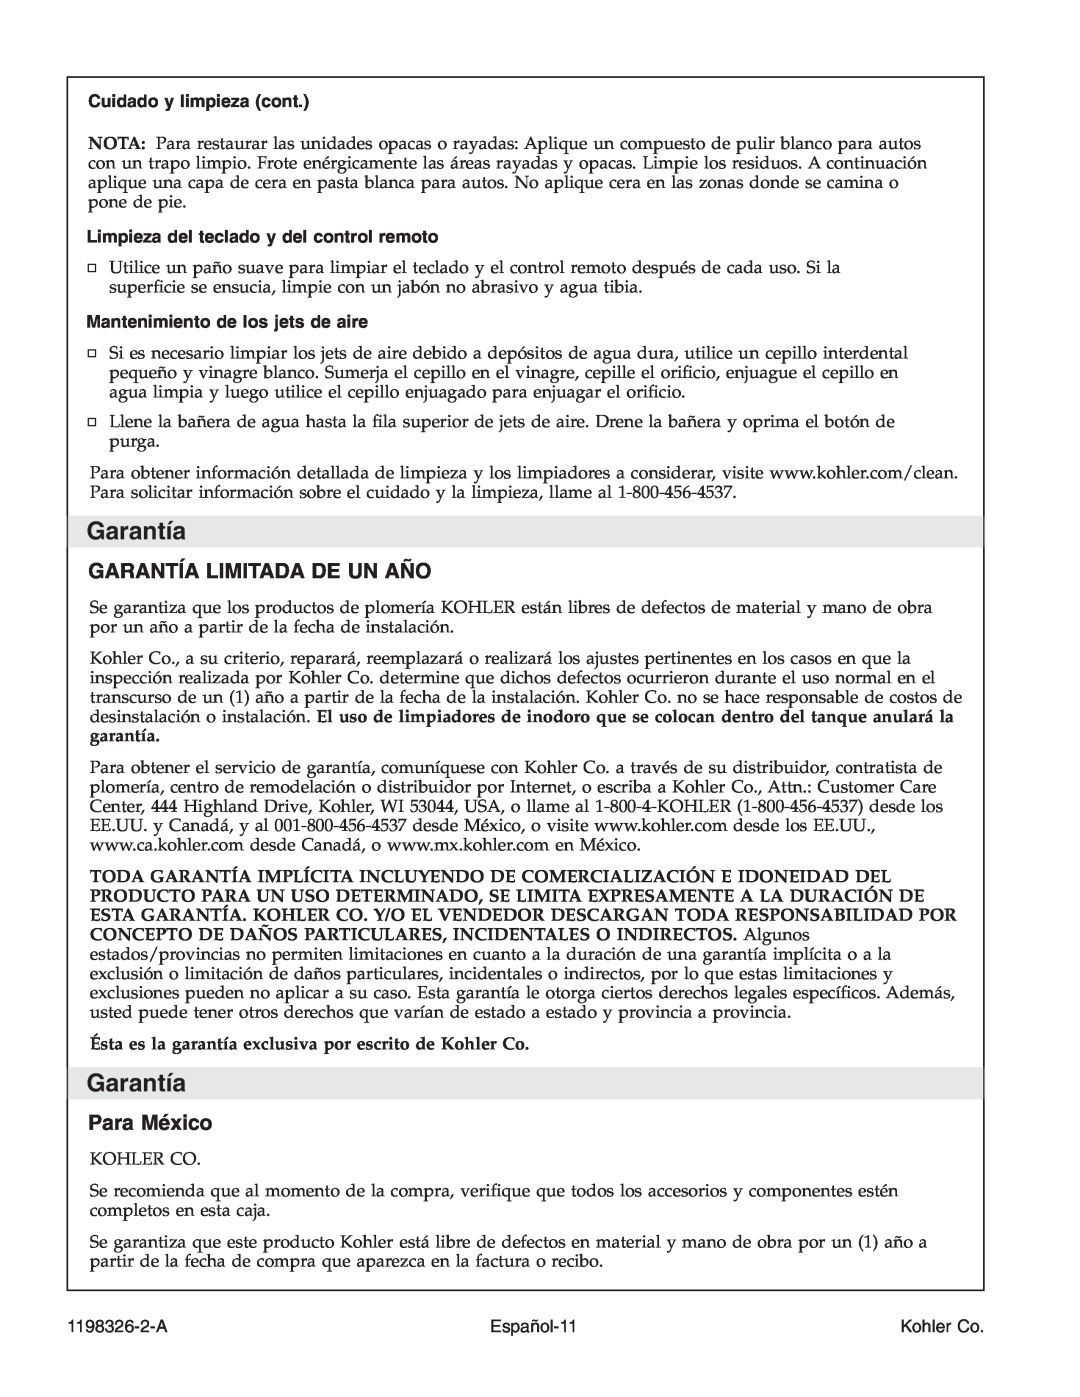 Kohler 1198326-2-A manual Garantía Limitada De Un Año, Para México, Cuidado y limpieza cont, Español-11, Kohler Co 